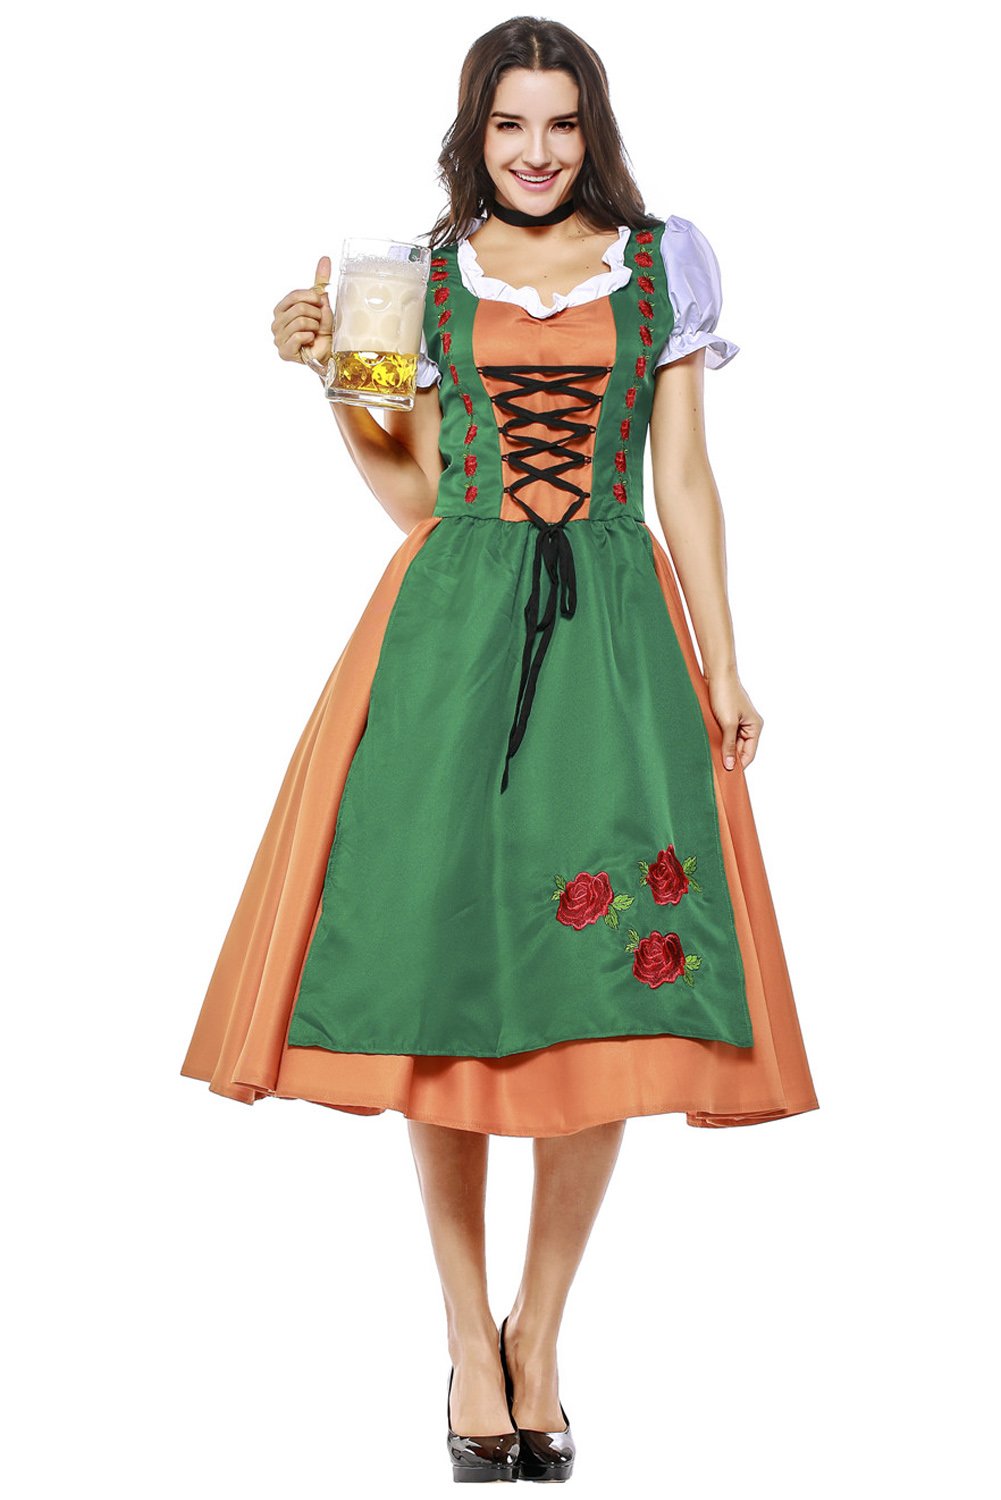 Damen Dirndl Trachtenkleid für Oktoberfest Karneval Kostüm Mottoparty Erwachsene